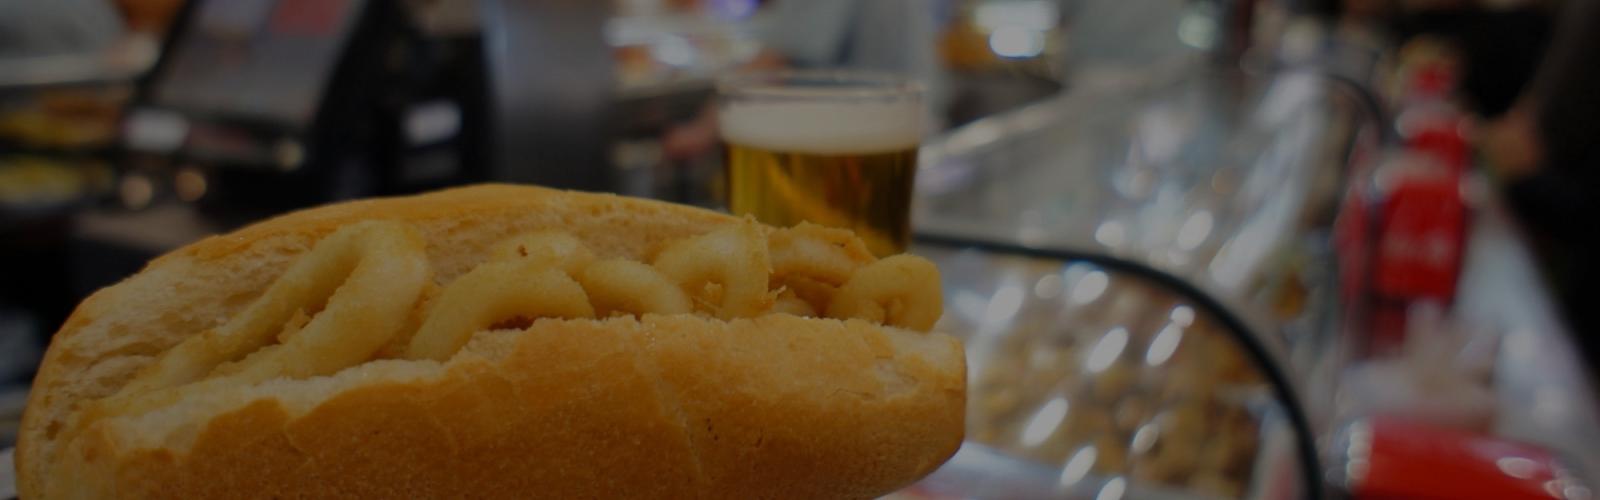 Вкусные истории старого Мадрида. Бутерброды с кальмарами